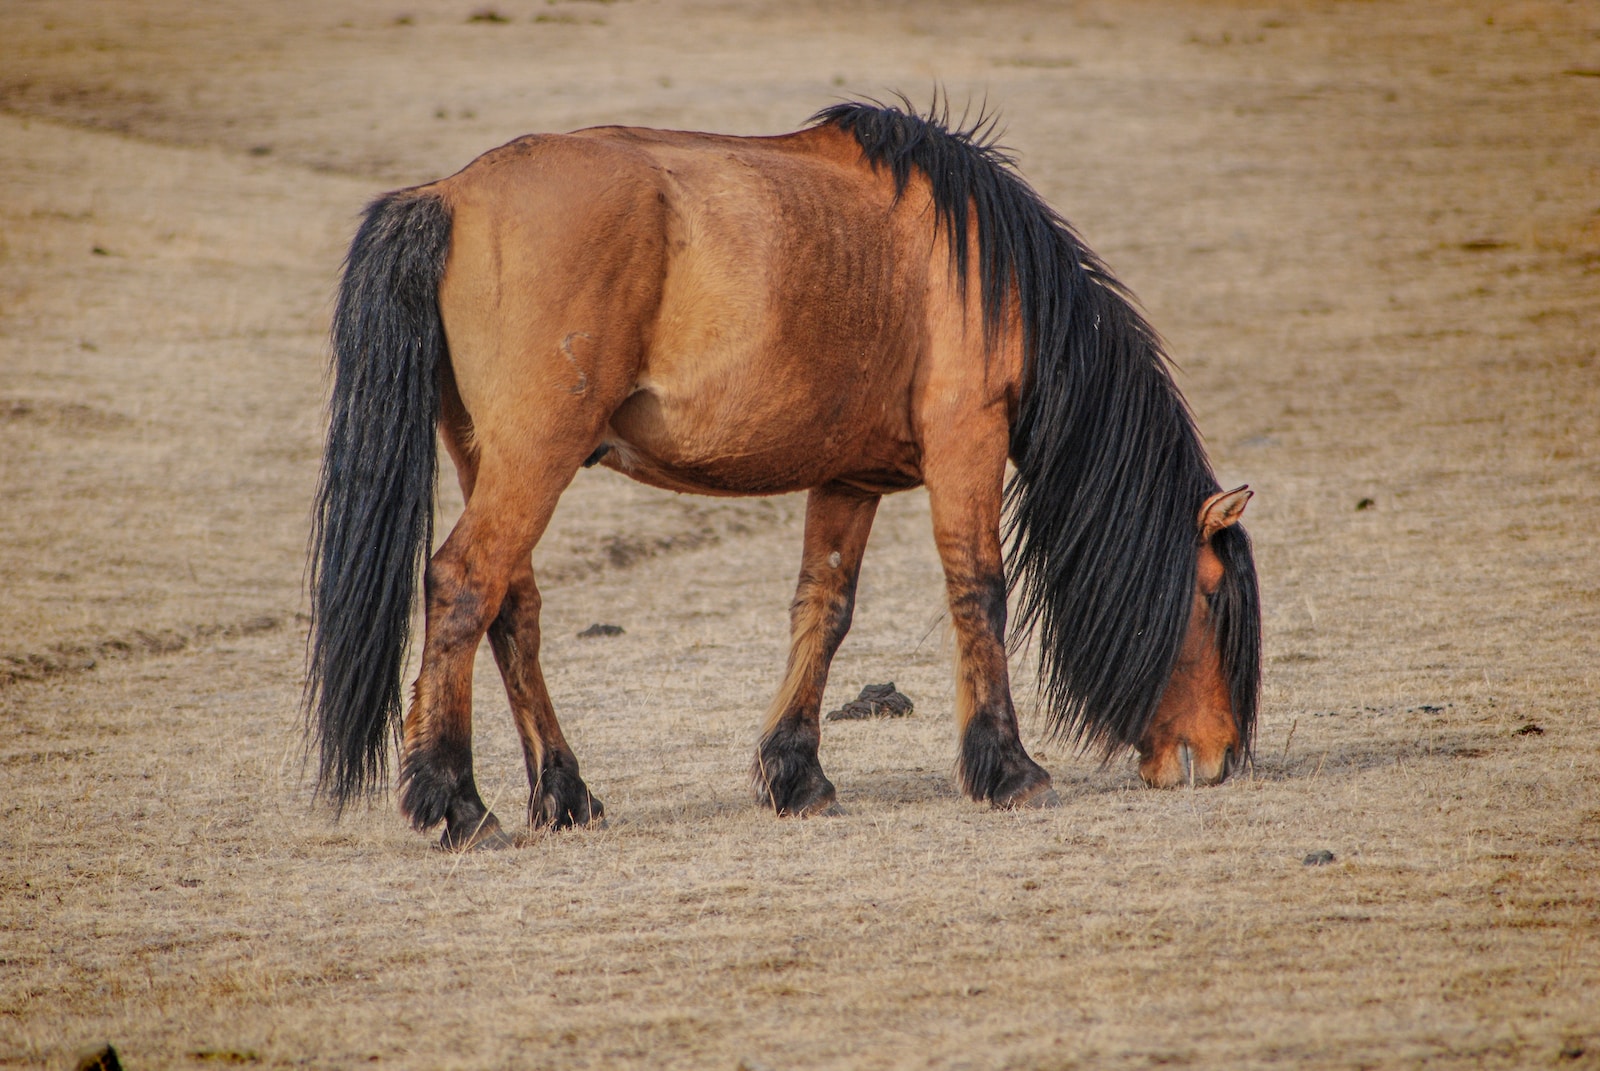 Die Bedeutung von Pferdeausbildung für junge Pferde: Eine entscheidende Phase der Entwicklung